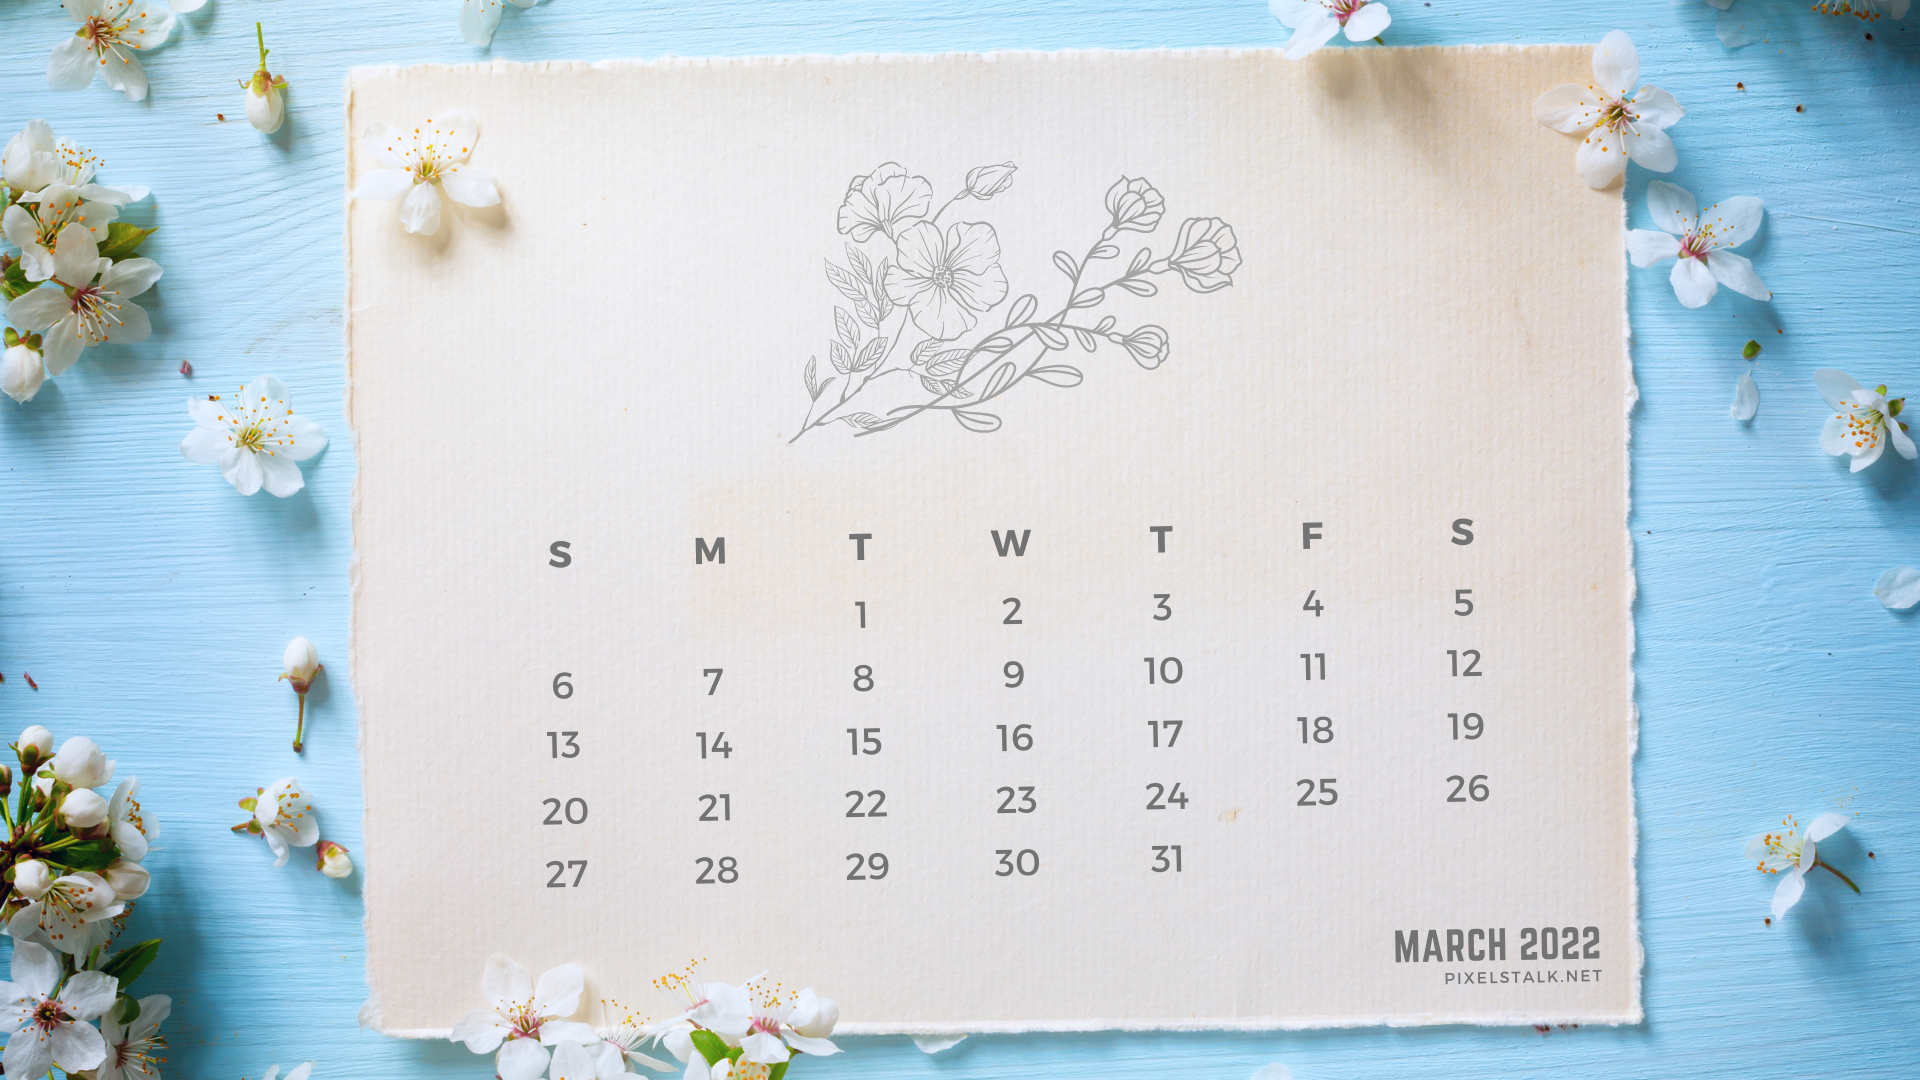 March 2022 Desktop Calendar March 2022 Calendar Desktop Wallpapers Hd - Pixelstalk.net